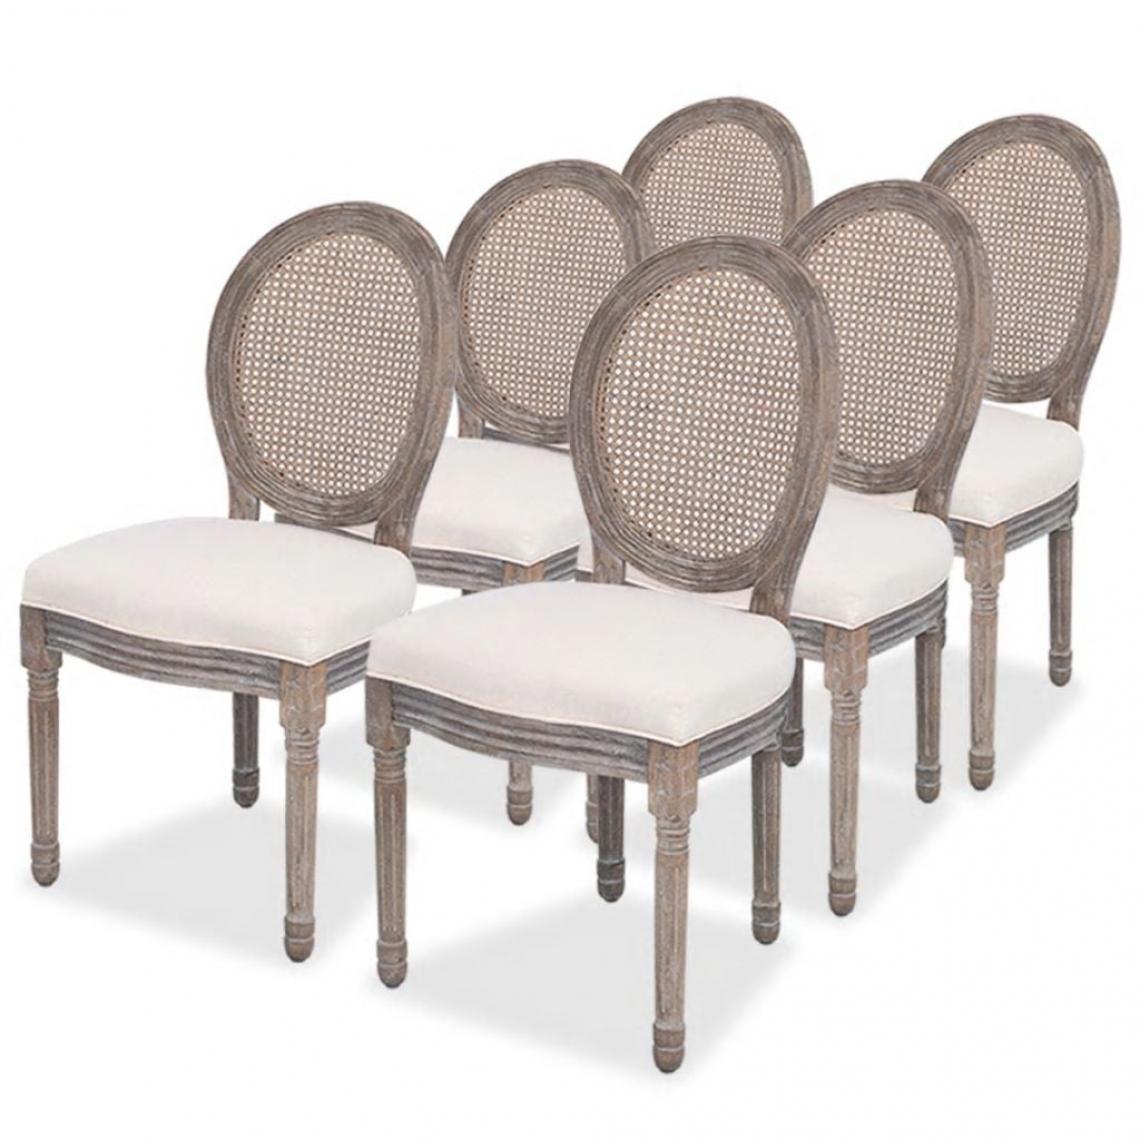 Decoshop26 - Lot de 6 chaises de salle à manger cuisine design classique tissu crème CDS022368 - Chaises